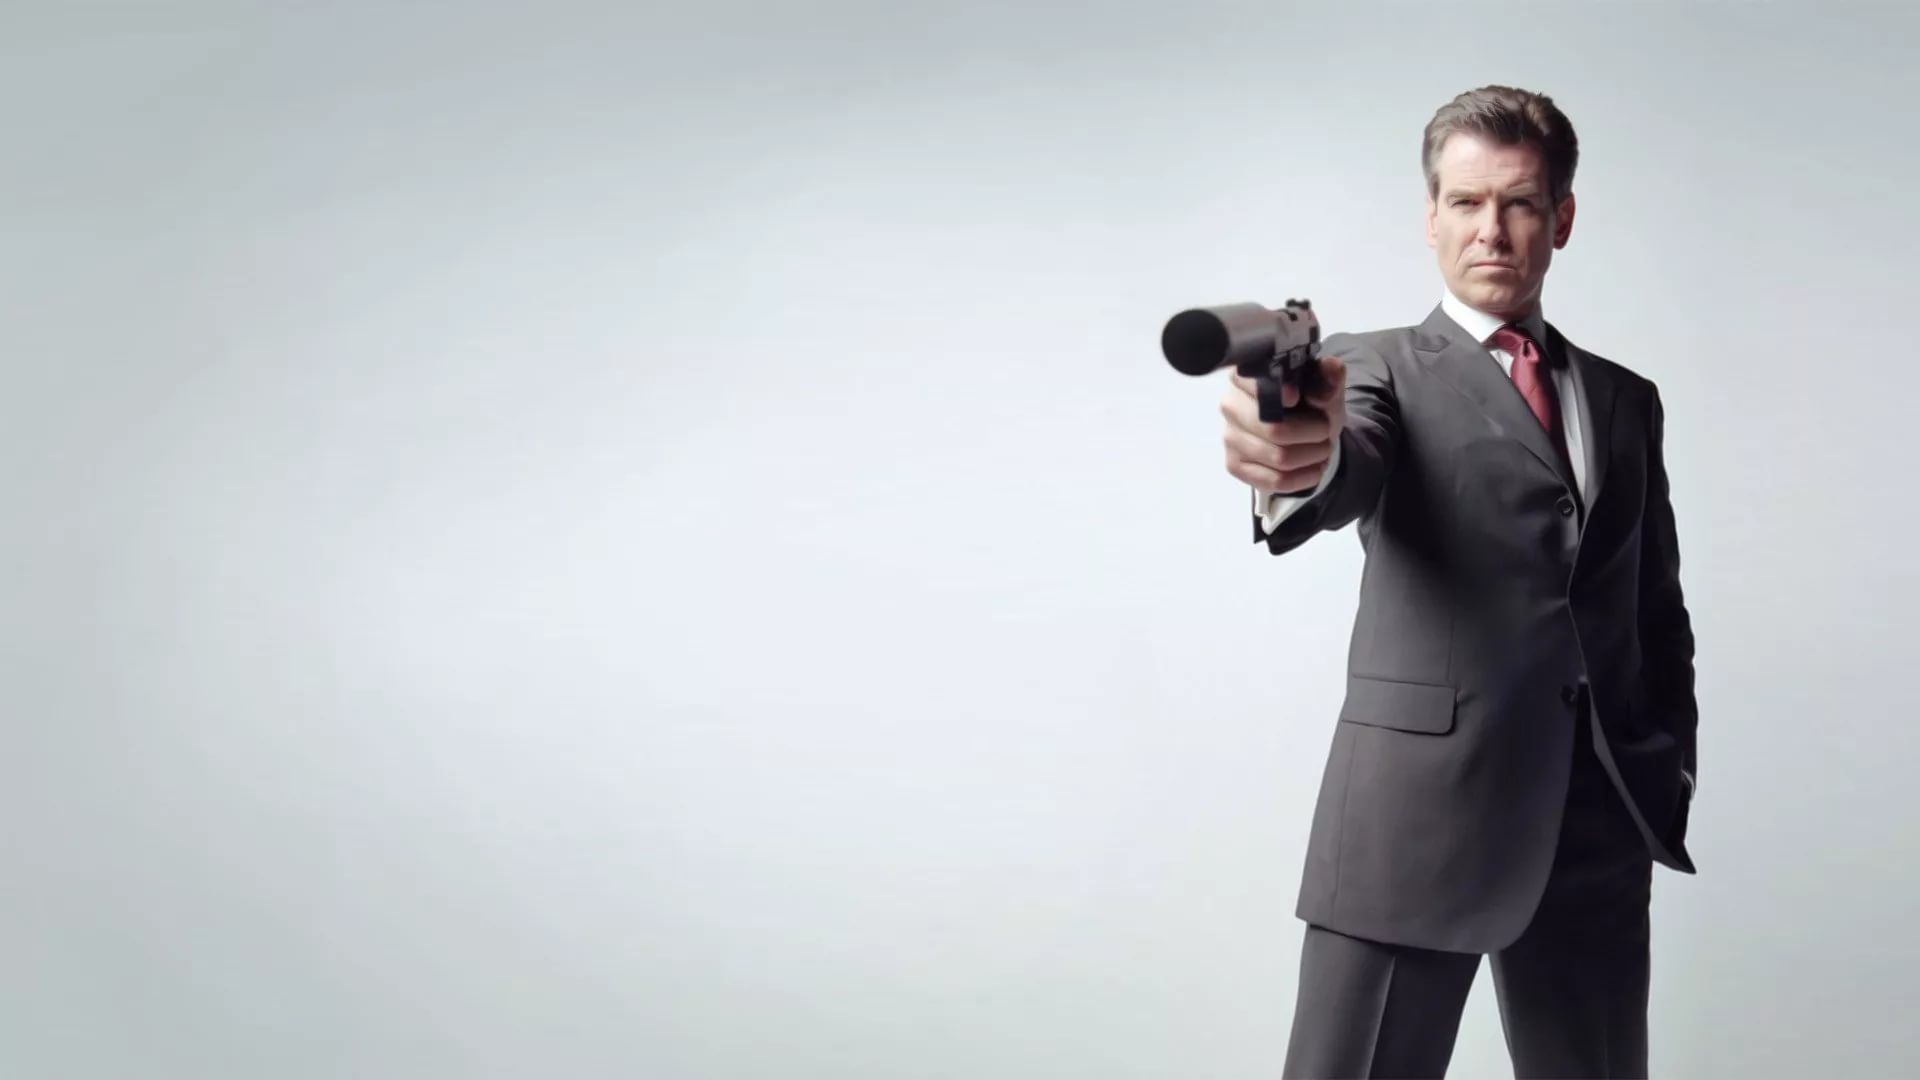 Vật liệu inox 007 chắc chắn sẽ làm bạn cảm thấy rất đẳng cấp và đầy chuyên nghiệp như James Bond mỗi lần sử dụng. Hình ảnh sản phẩm này chắc chắn sẽ làm bạn muốn sở hữu ngay lập tức để trở thành một người chơi chuyên nghiệp. 